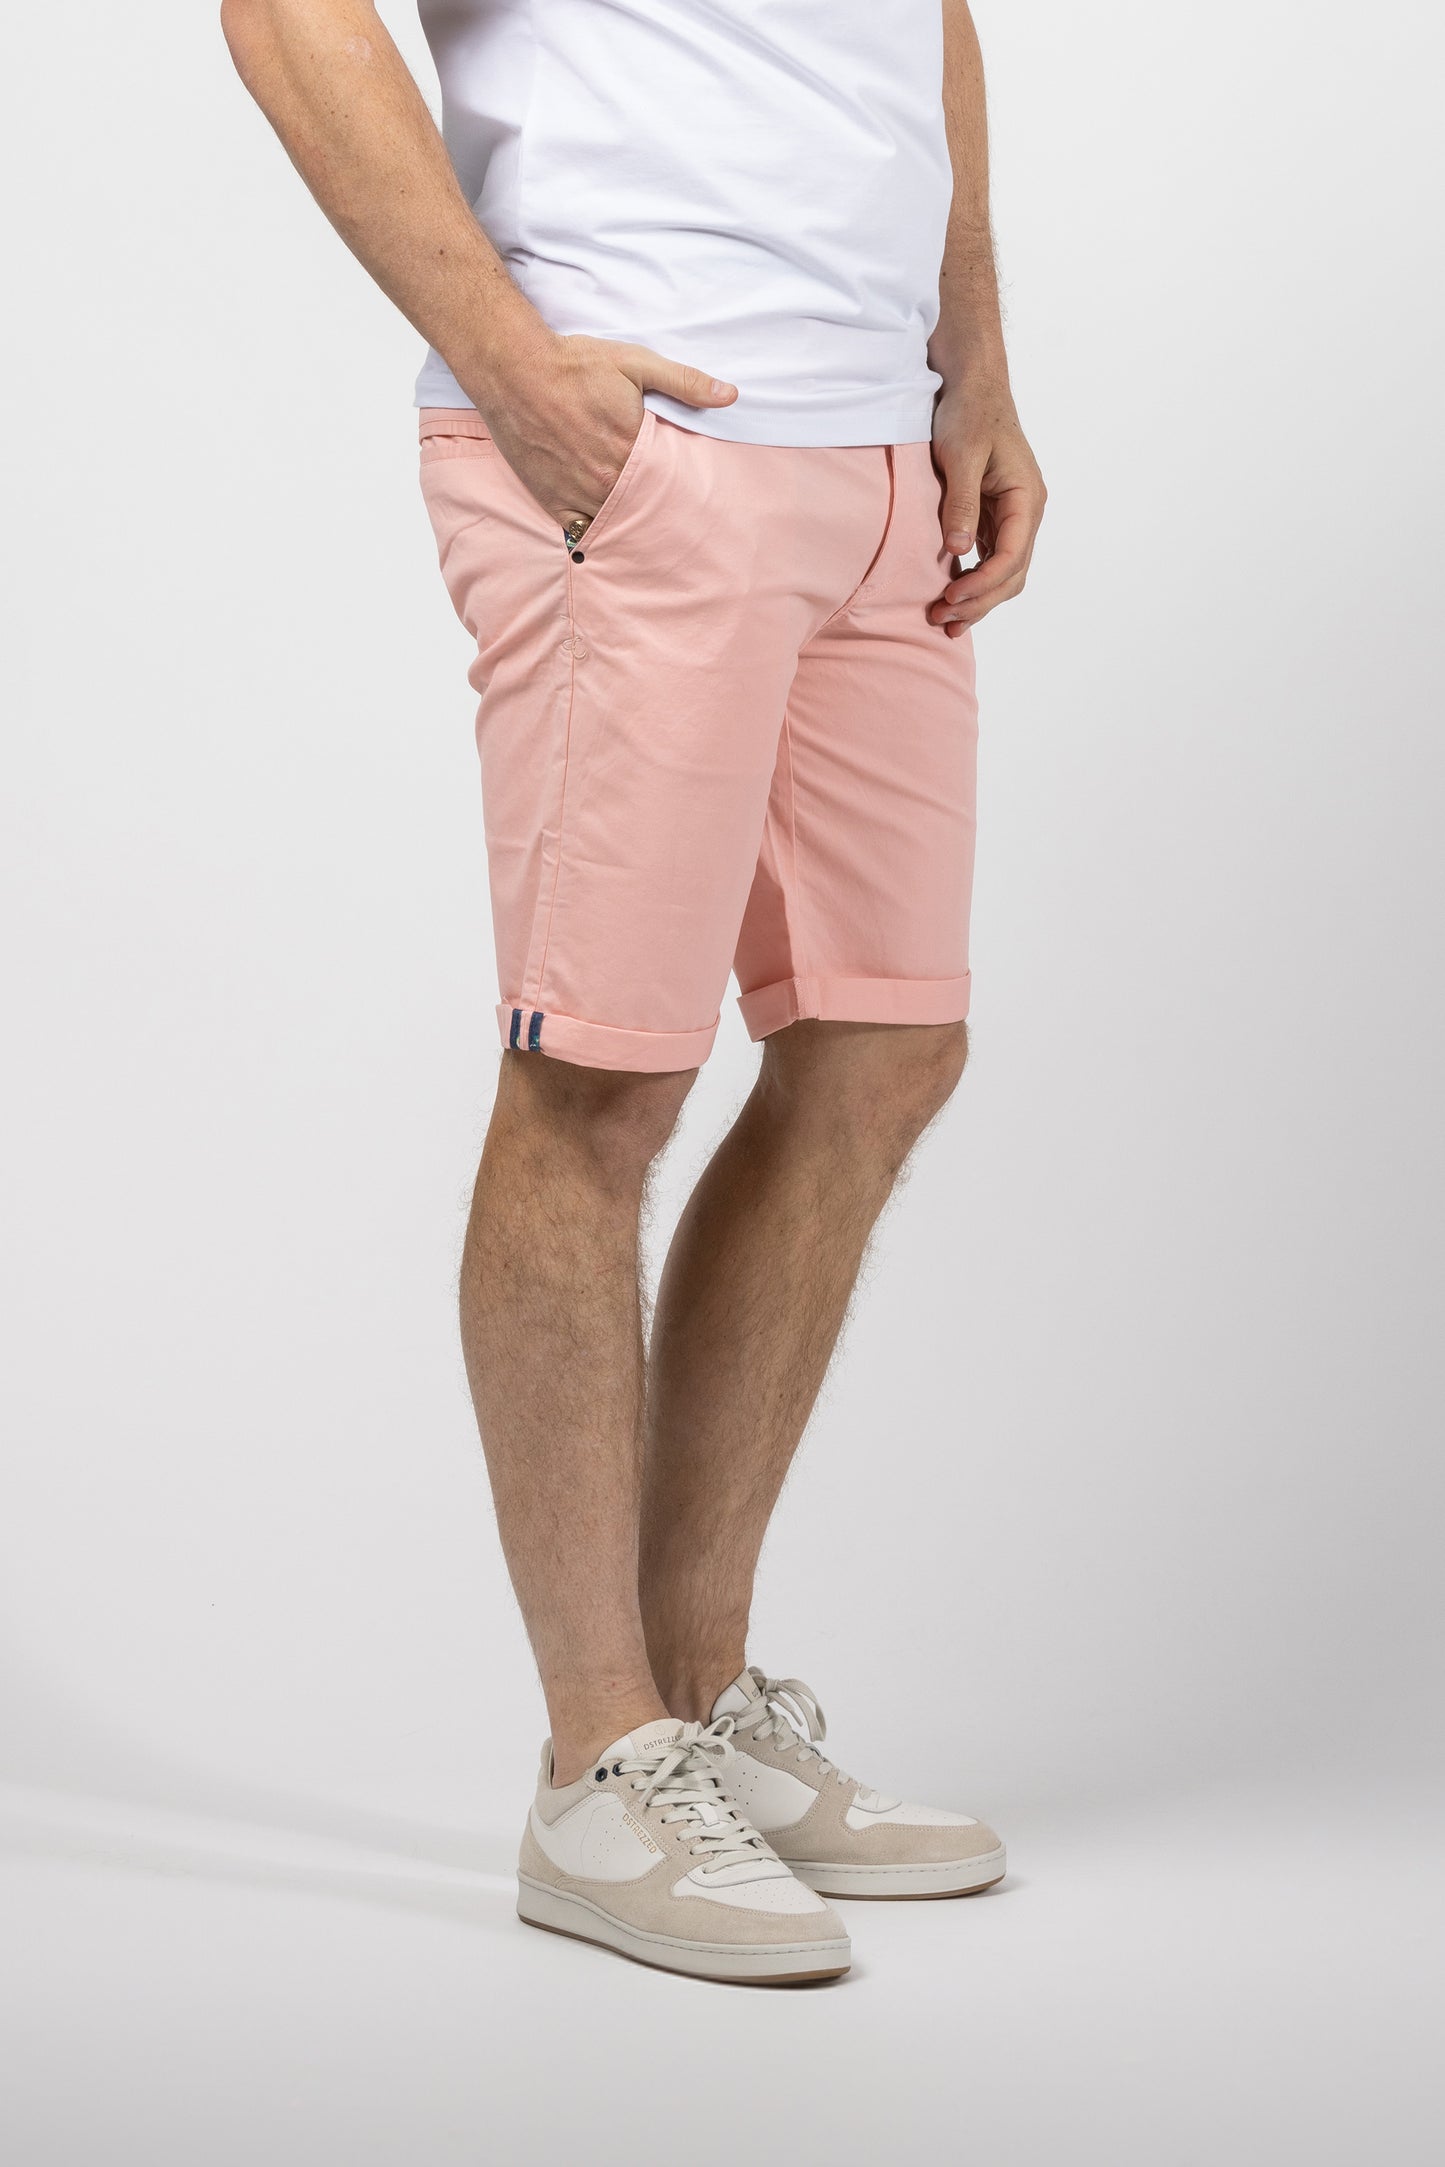 Cutler & Co Elijah Shorts - Pink or White